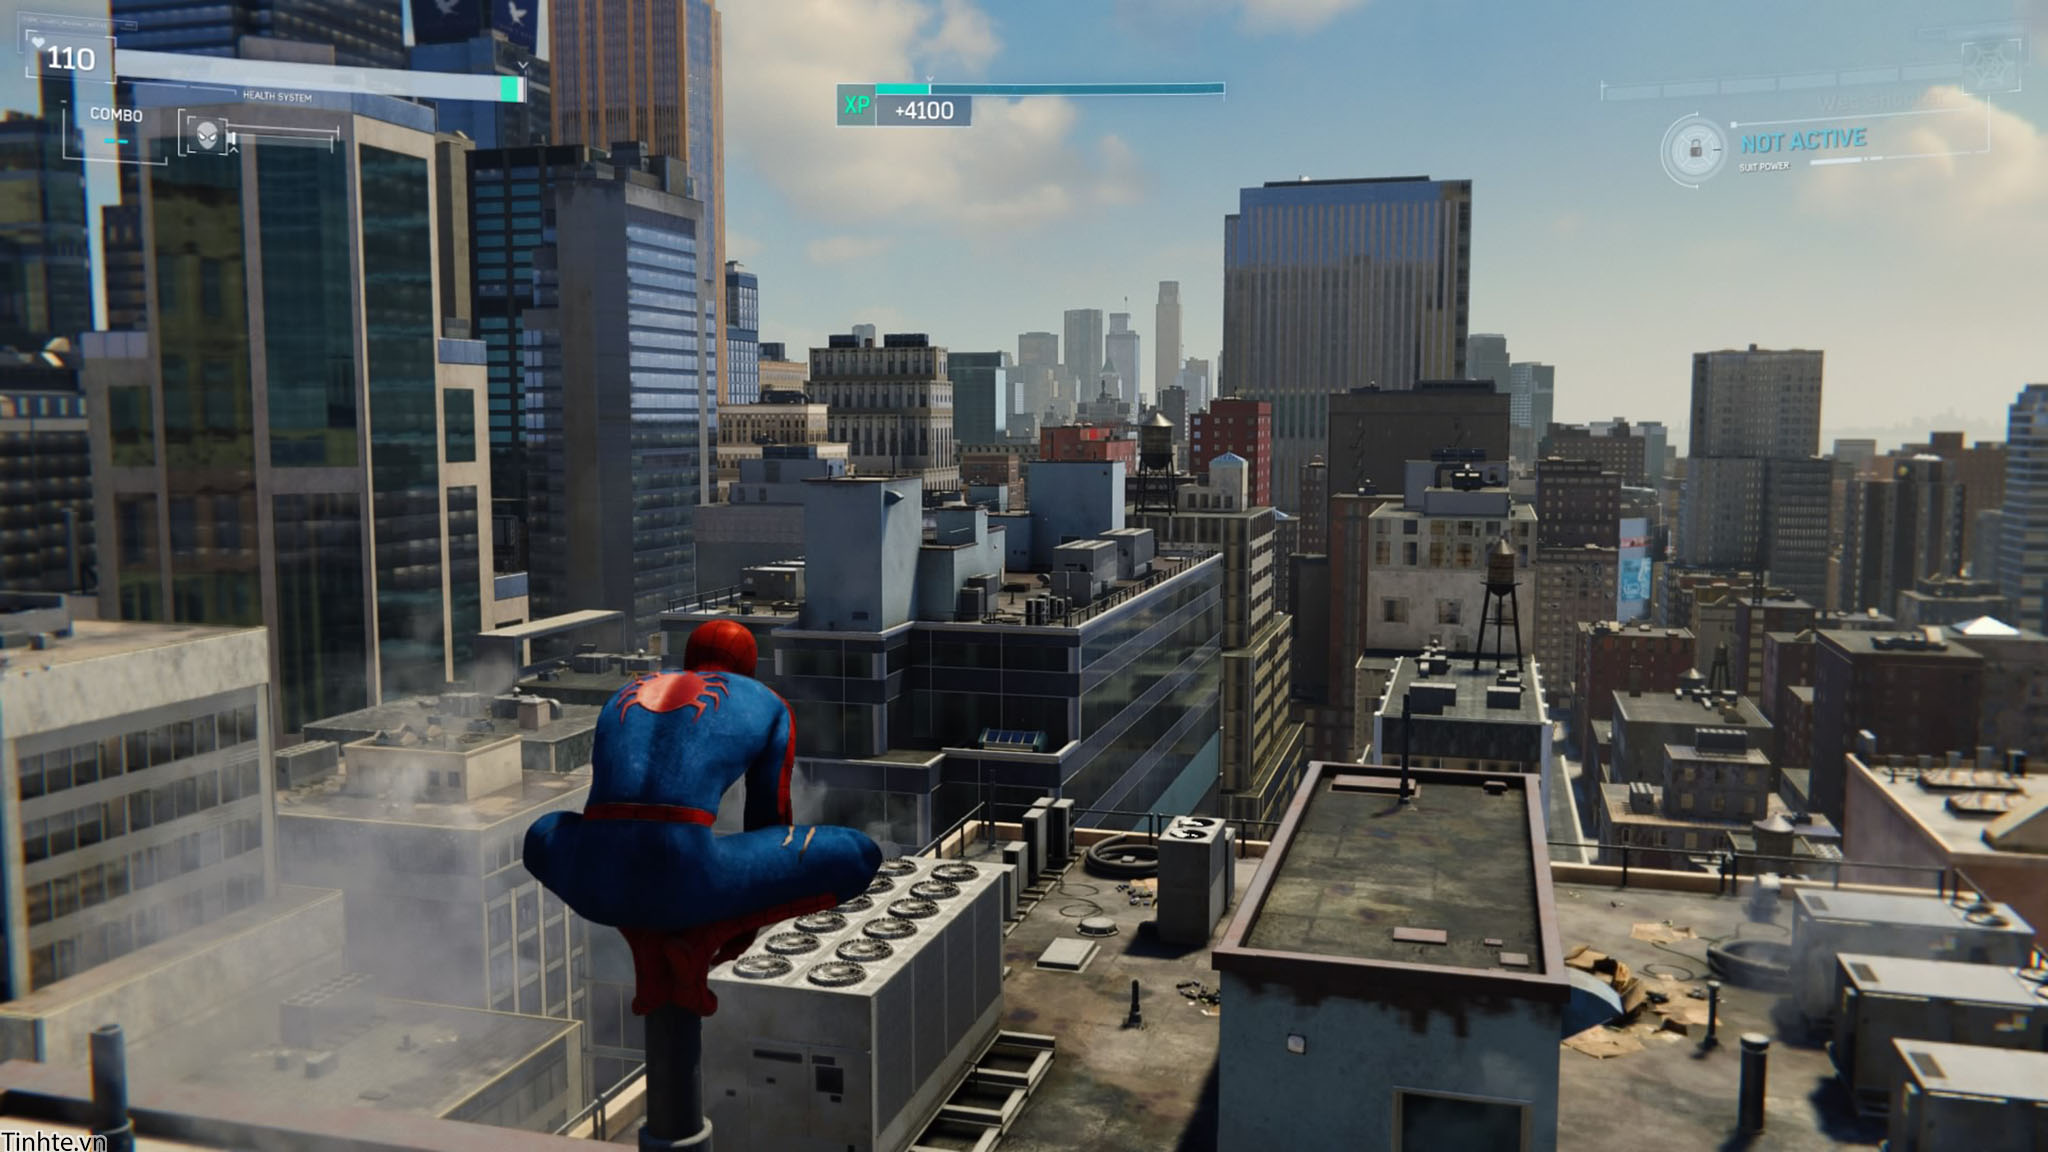 Đánh giá game] Spider-Man: Game hay nhất từ trước đến nay của Marvel